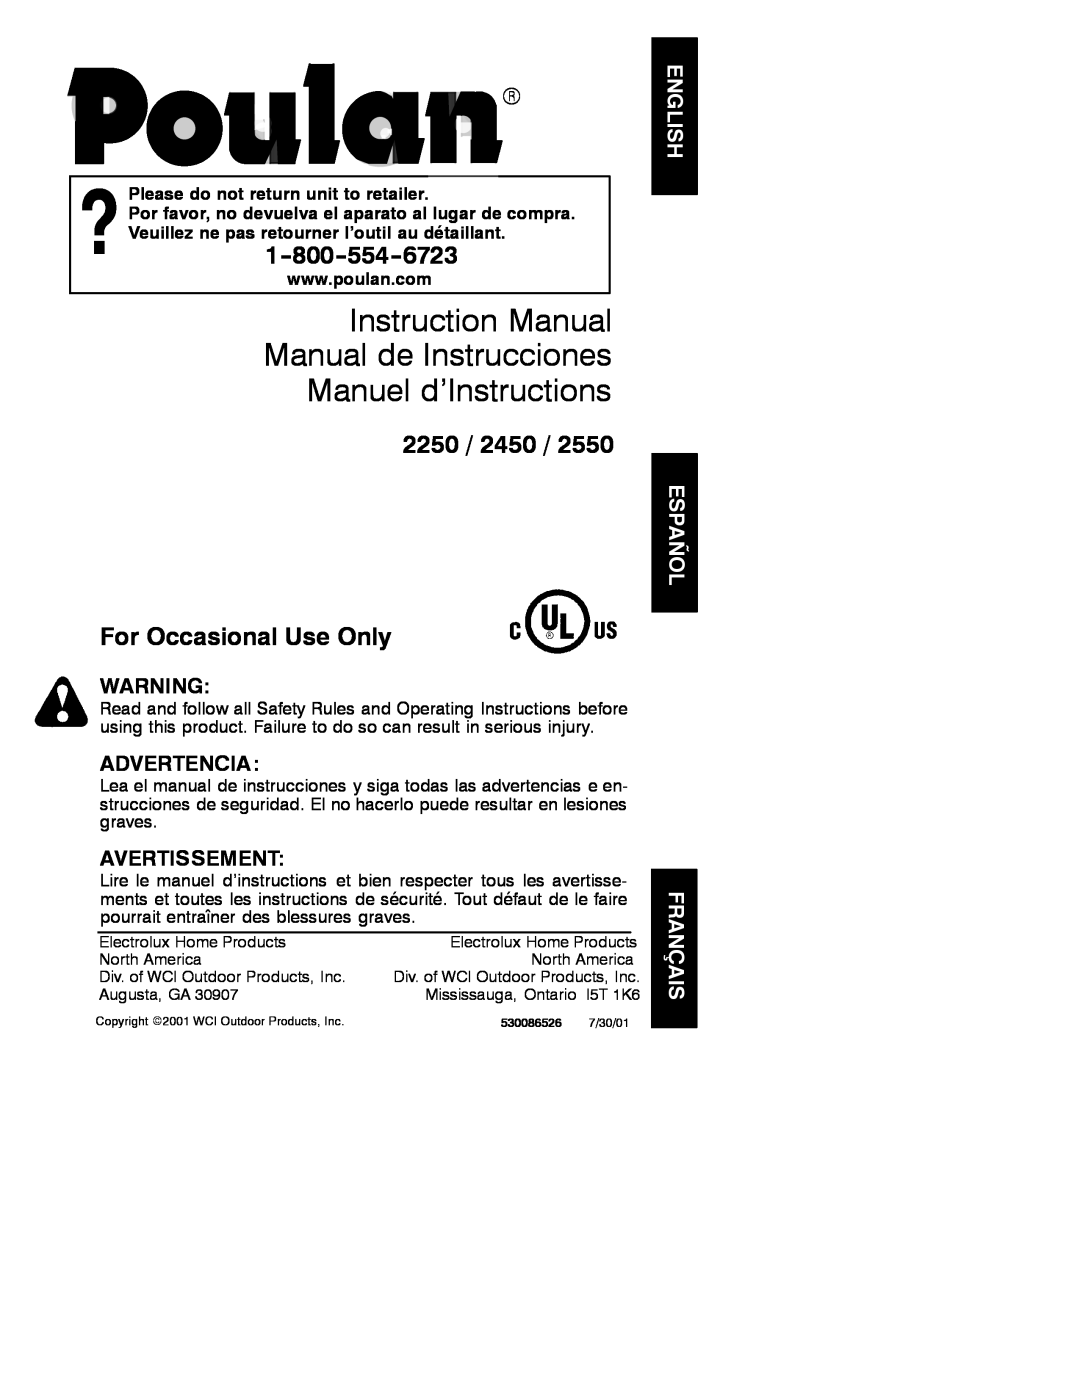 Poulan 530086526, 2001-07 instruction manual Instruction Manual Manual de Instrucciones Manuel d’Instructions, Advertencia 